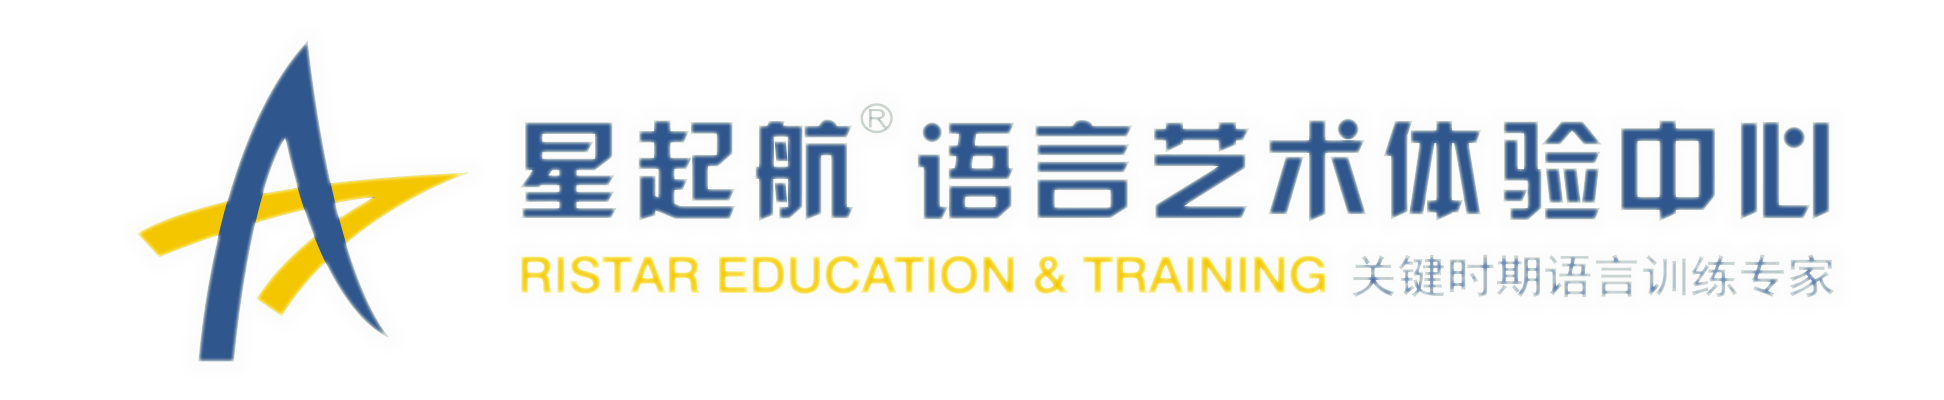 重庆星起航语言艺术教育